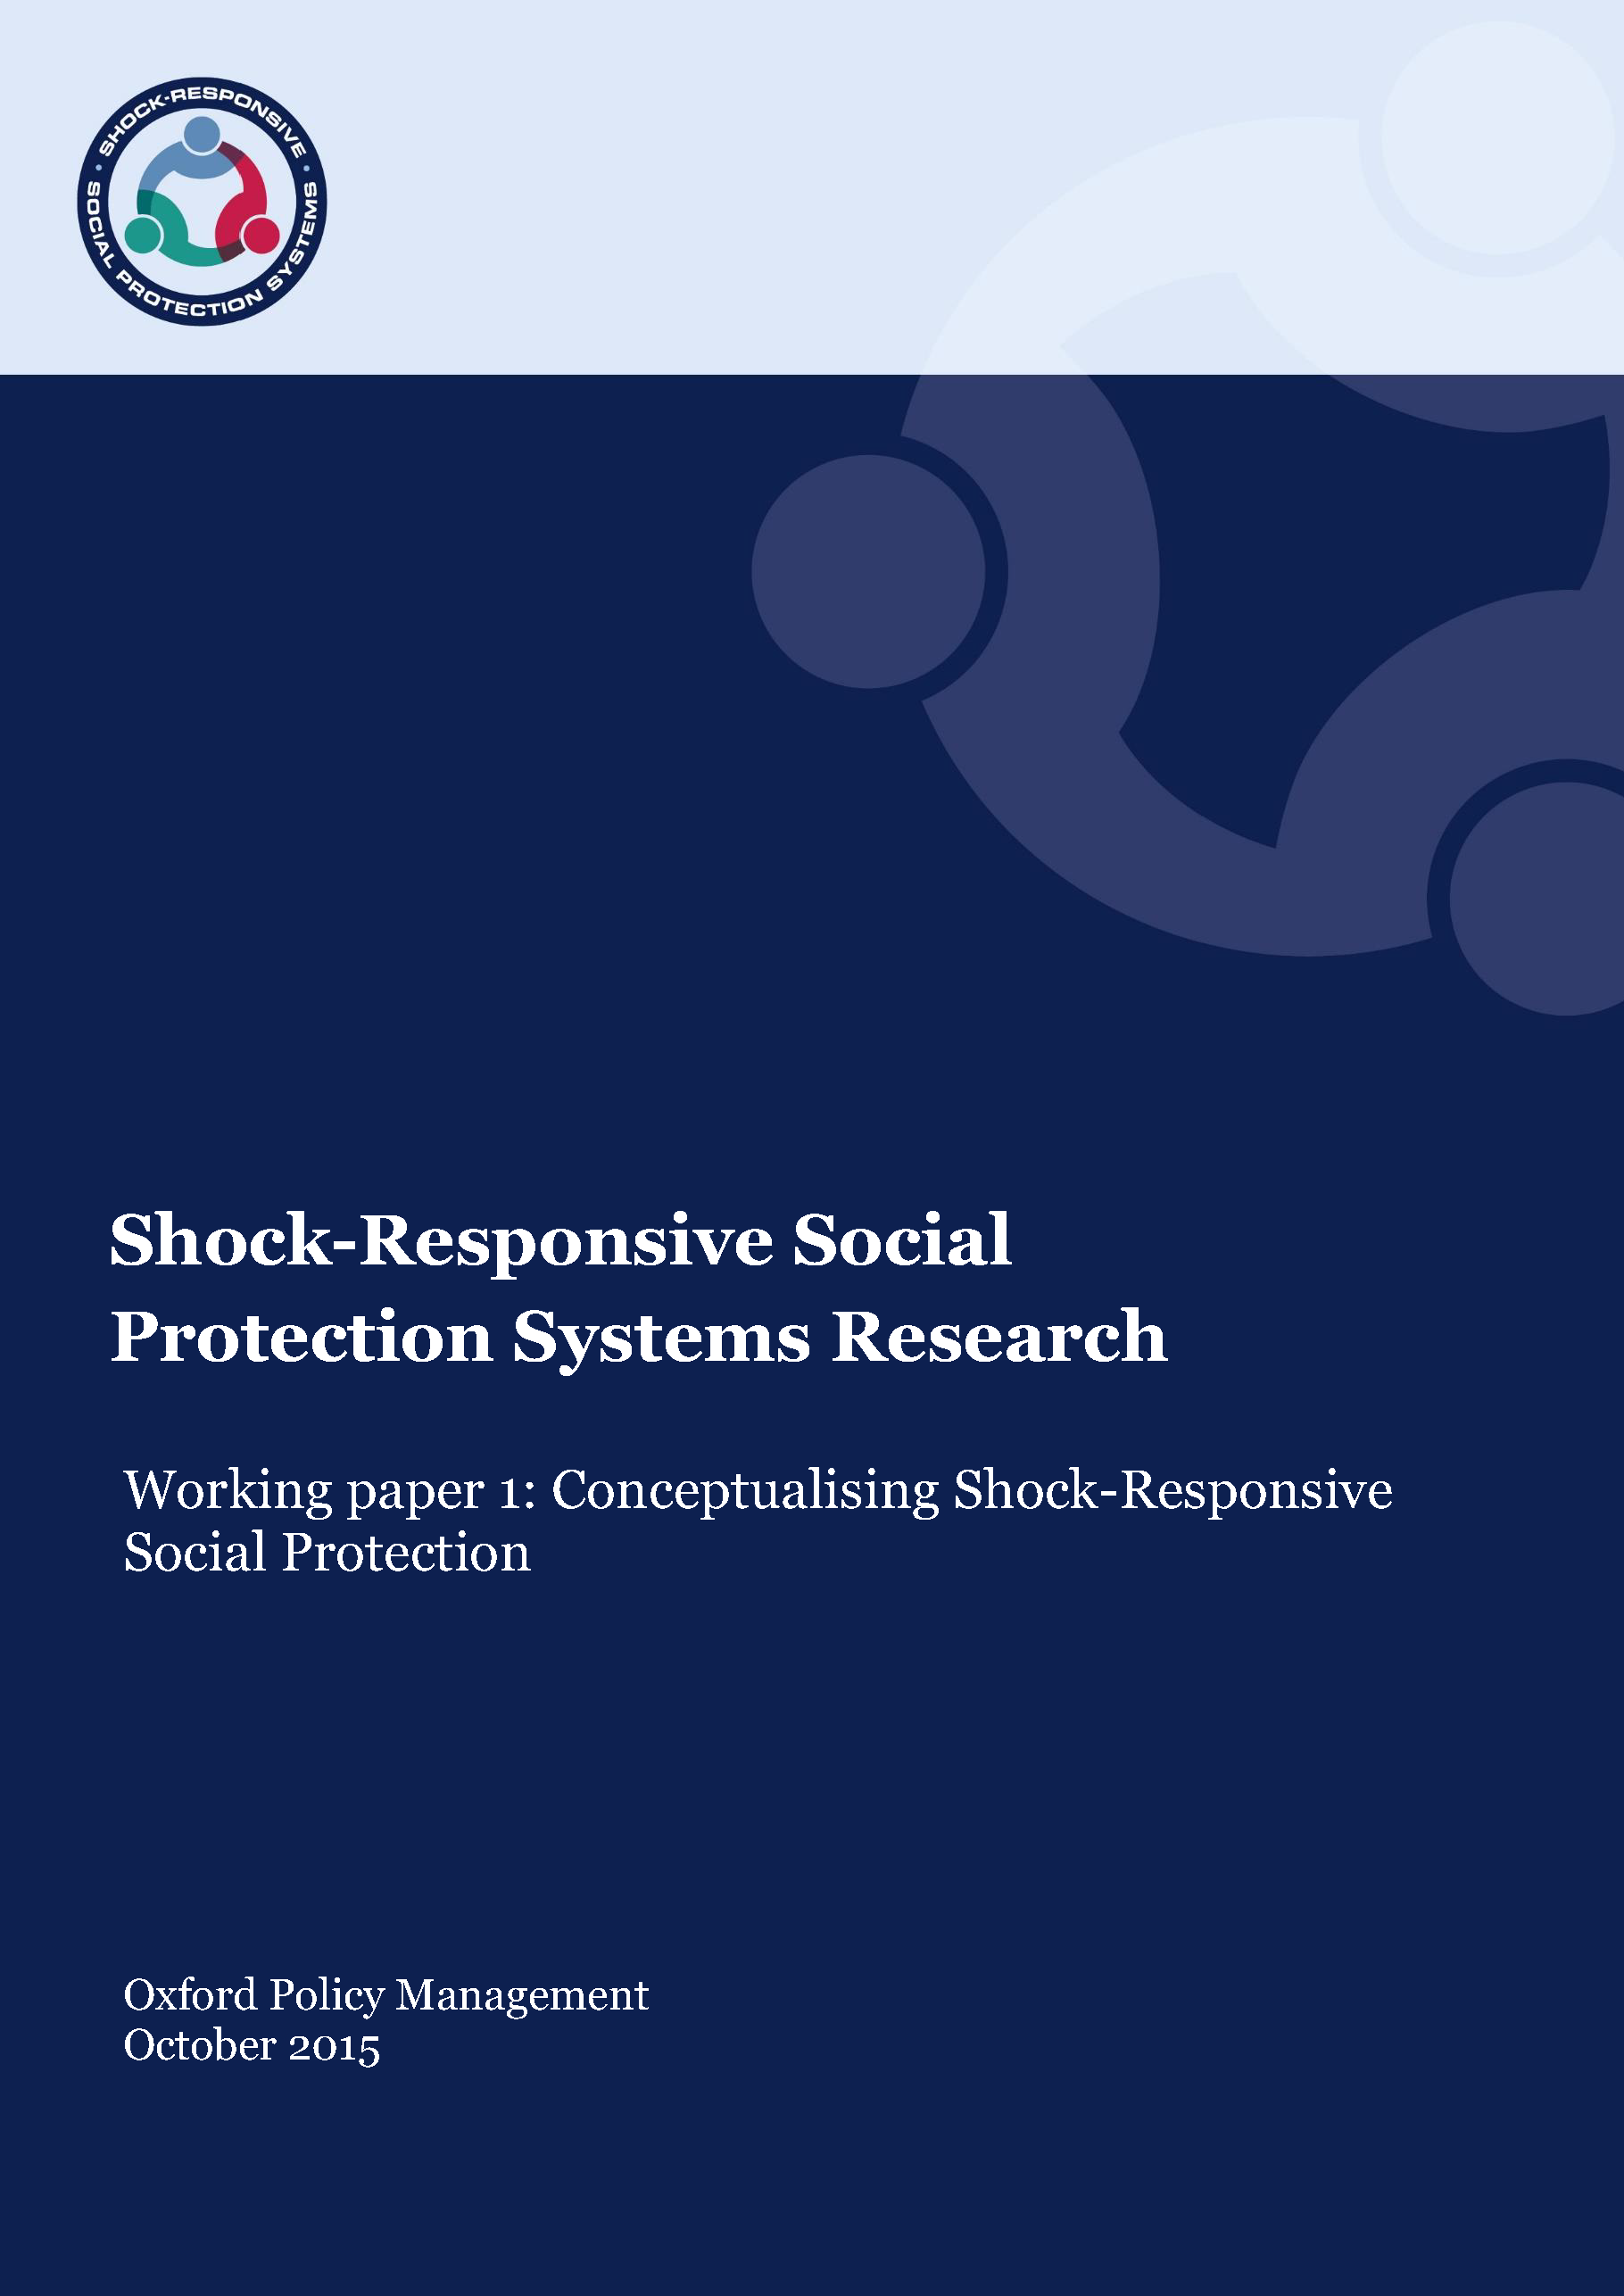 Page de couverture de la recherche sur les systèmes de protection sociale réactifs aux crises